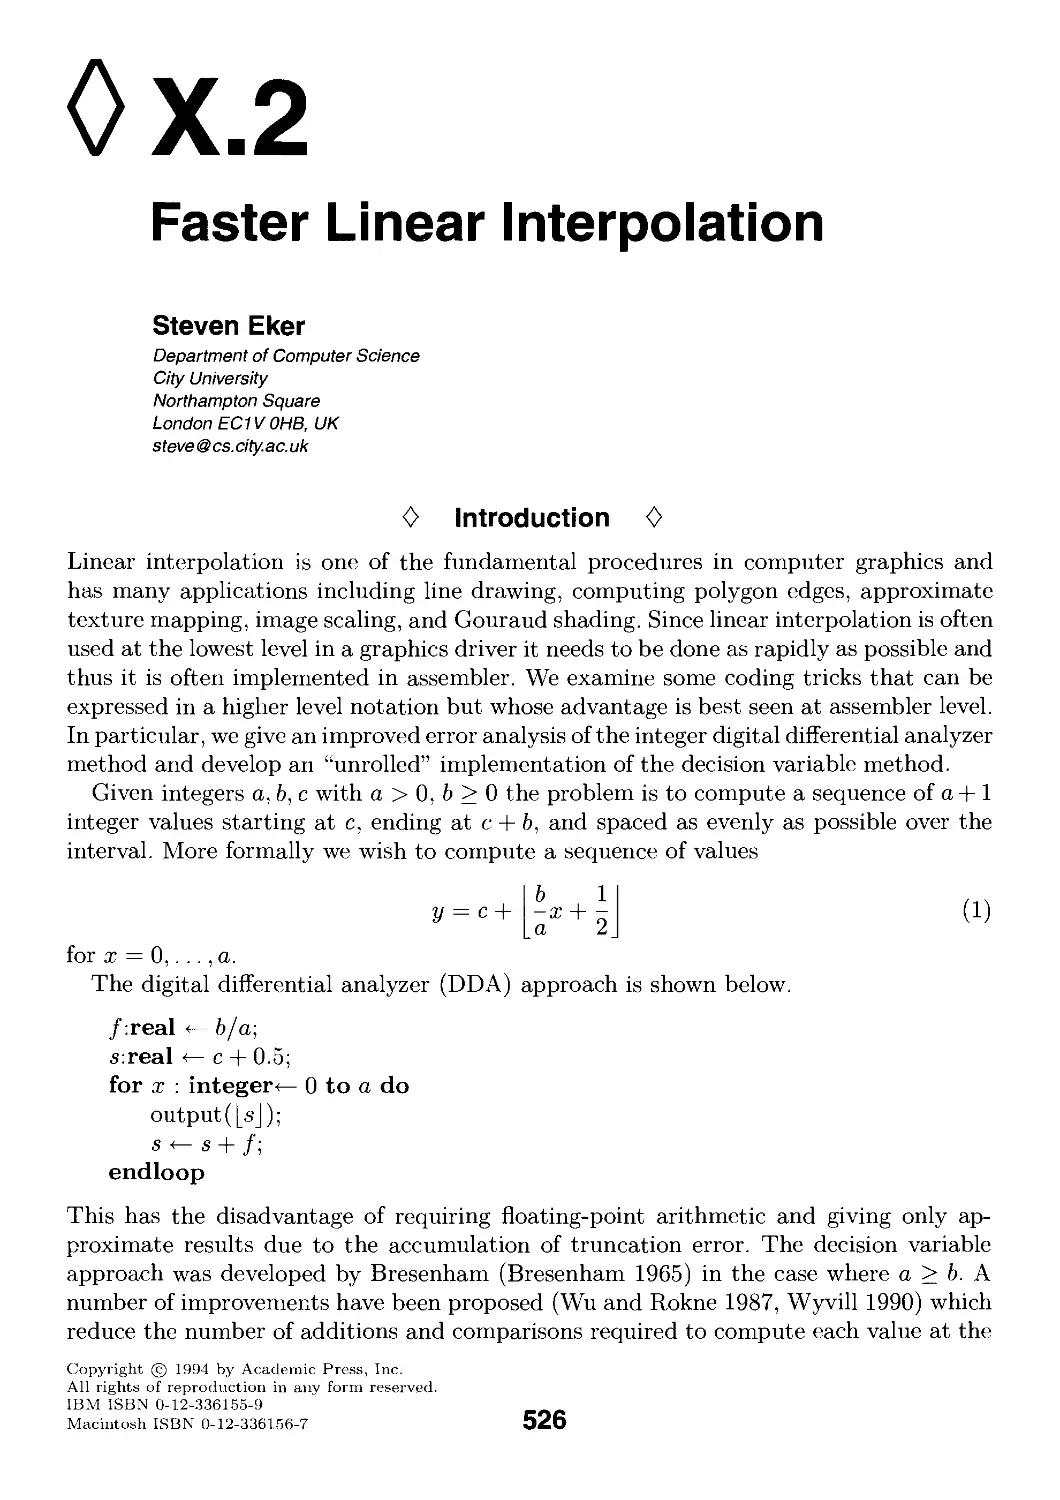 X.2. Faster Linear Interpolation by Steven Eker